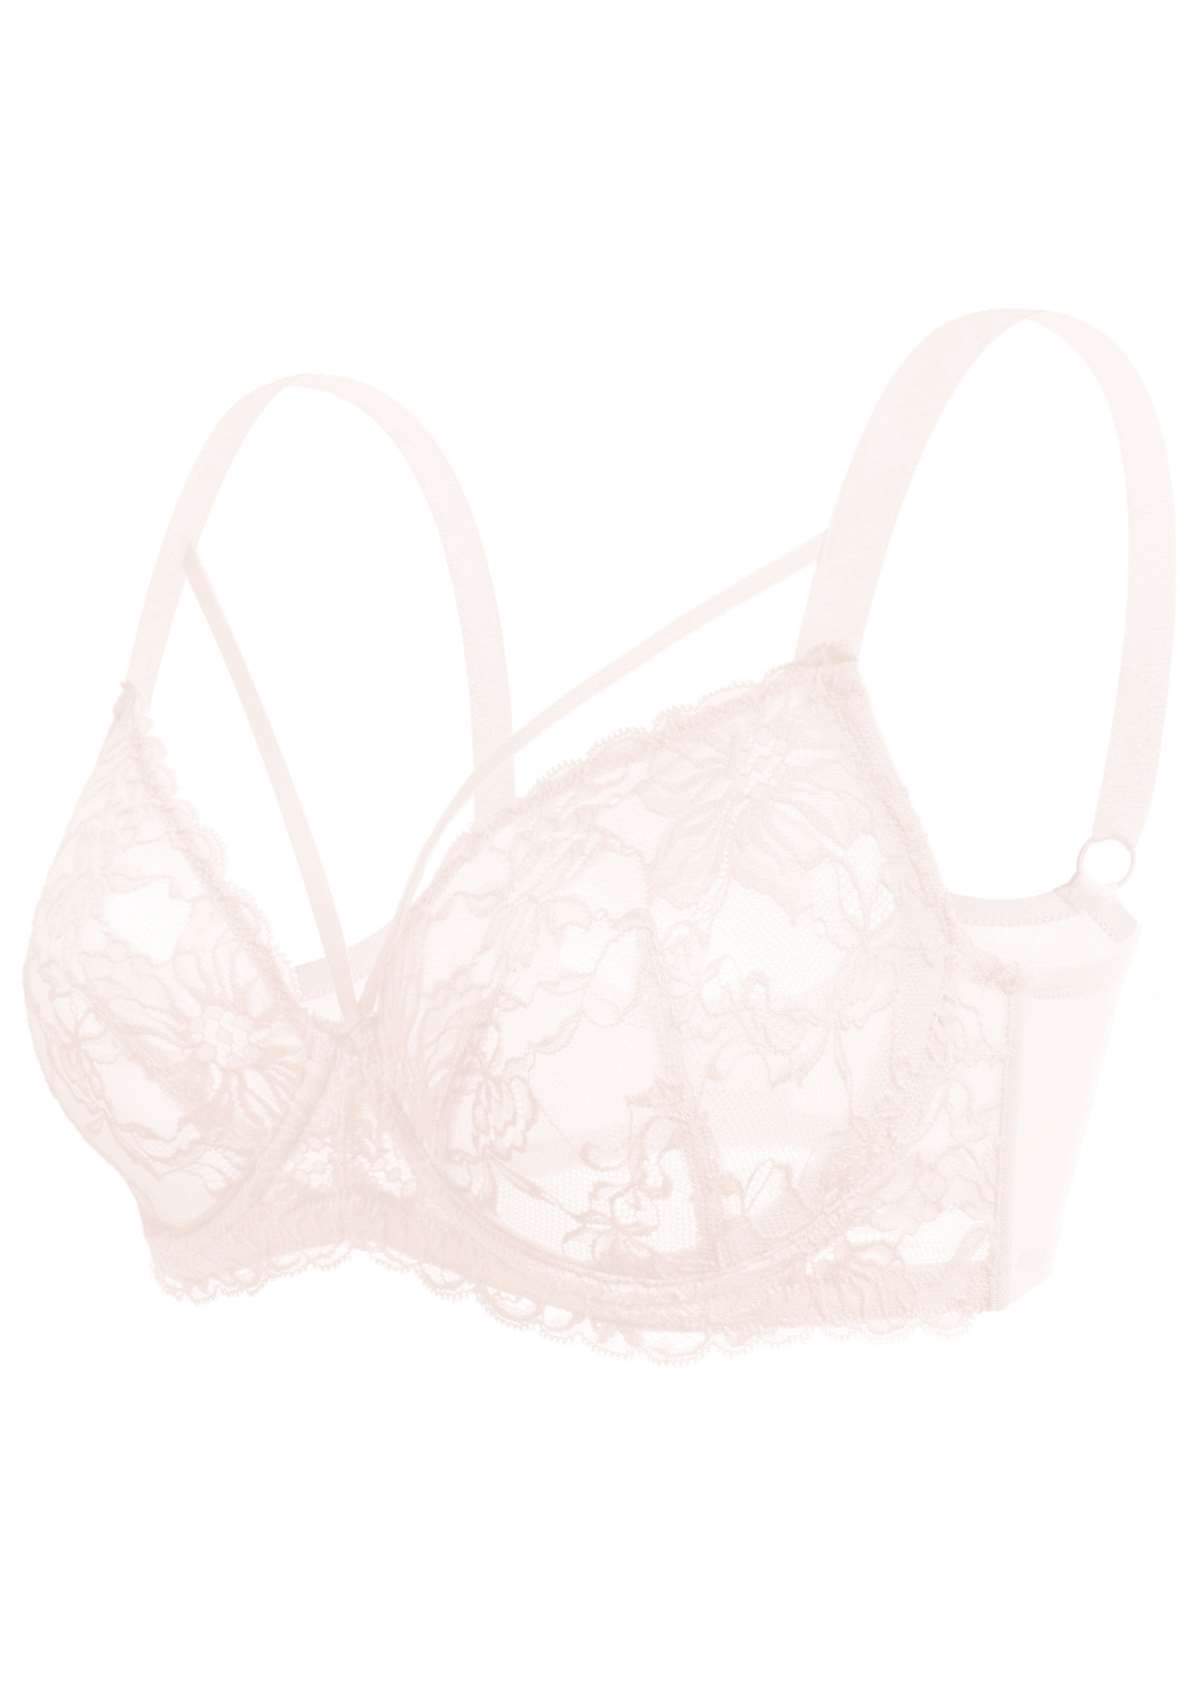 HSIA Pretty In Petals Underwire Lace Bra: No Padding, Full Cup Bra - Dusty Peach / 36 / D